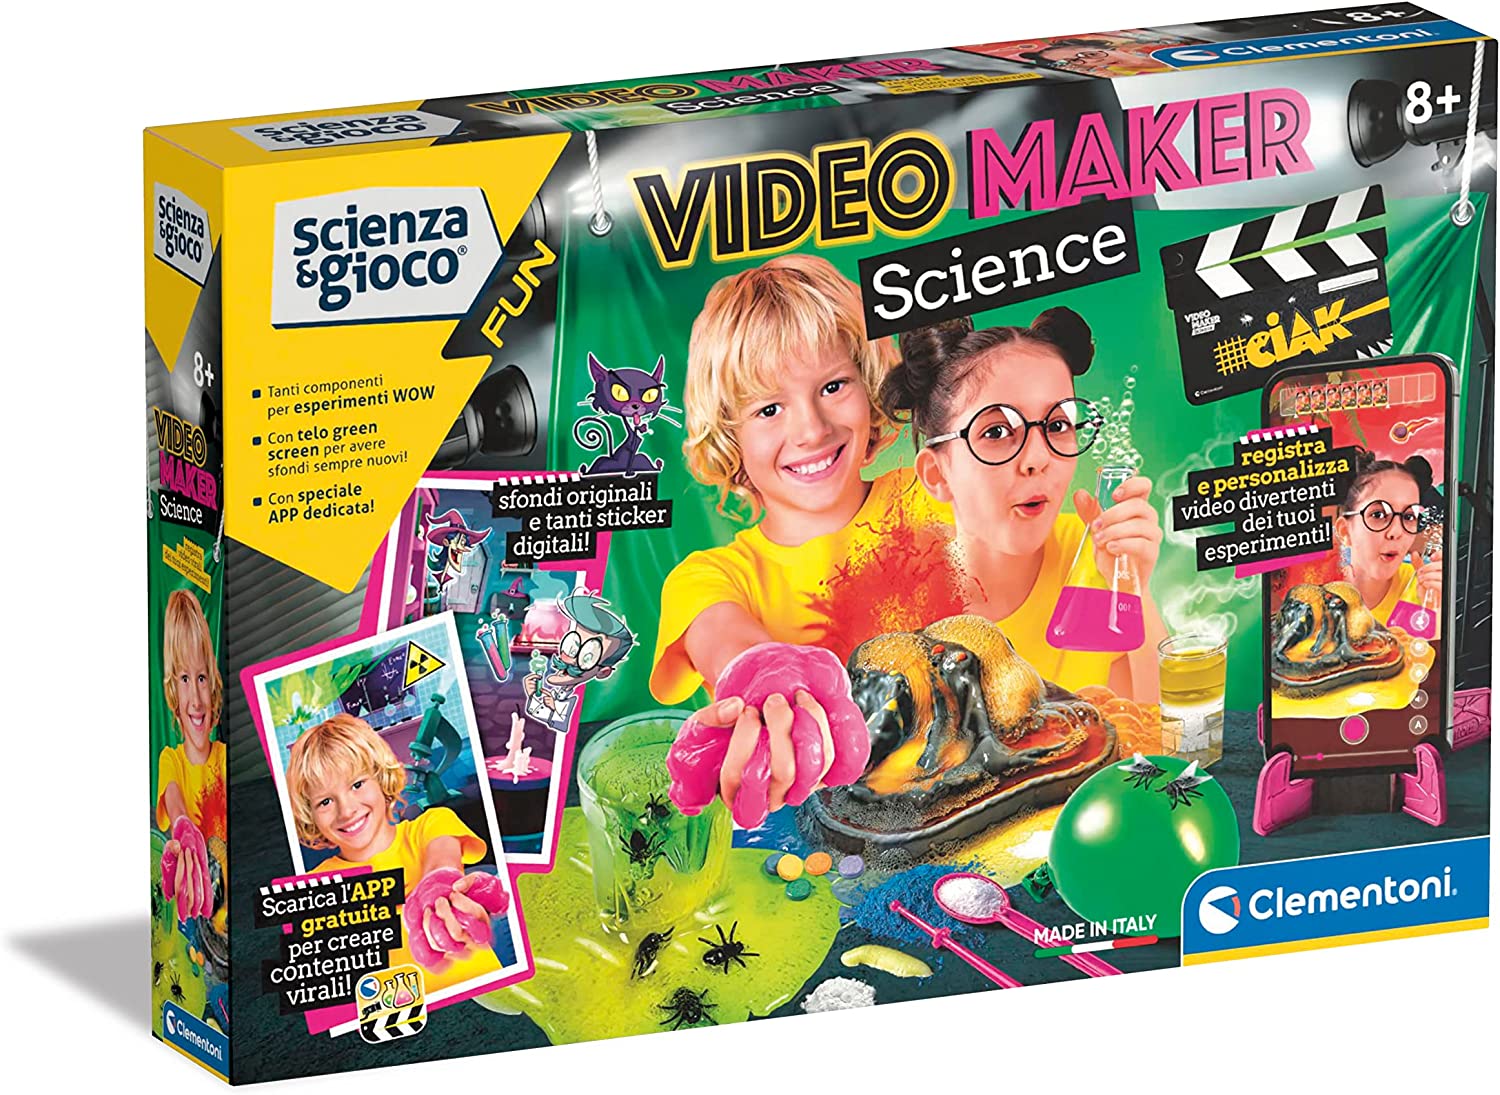 https://www.mistristore.com/219757/clementoni-fun-video-maker-science-laboratorio-bambini-esperimenti-di-scienza-gioco-scientifico-8-anni-versione-in-italiano-cl19.jpg?image=0